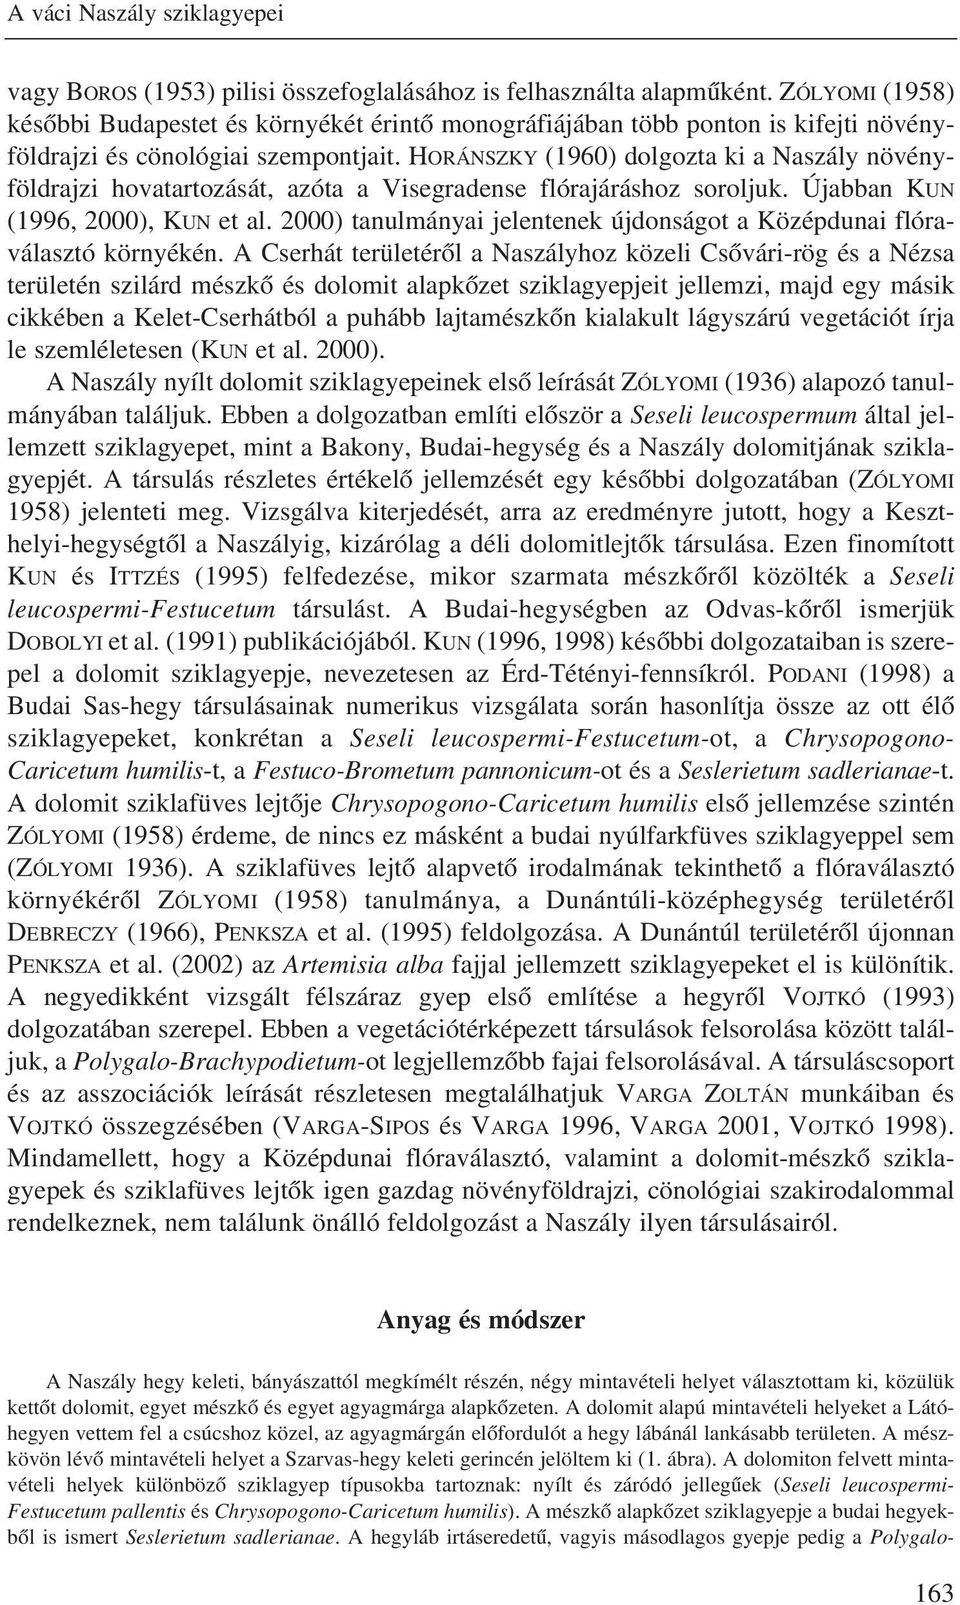 HORÁNSZKY (1960) dolgozta ki a Naszály növényföldrajzi hovatartozását, azóta a Visegradense flórajáráshoz soroljuk. Újabban KUN (1996, 2000), KUN et al.